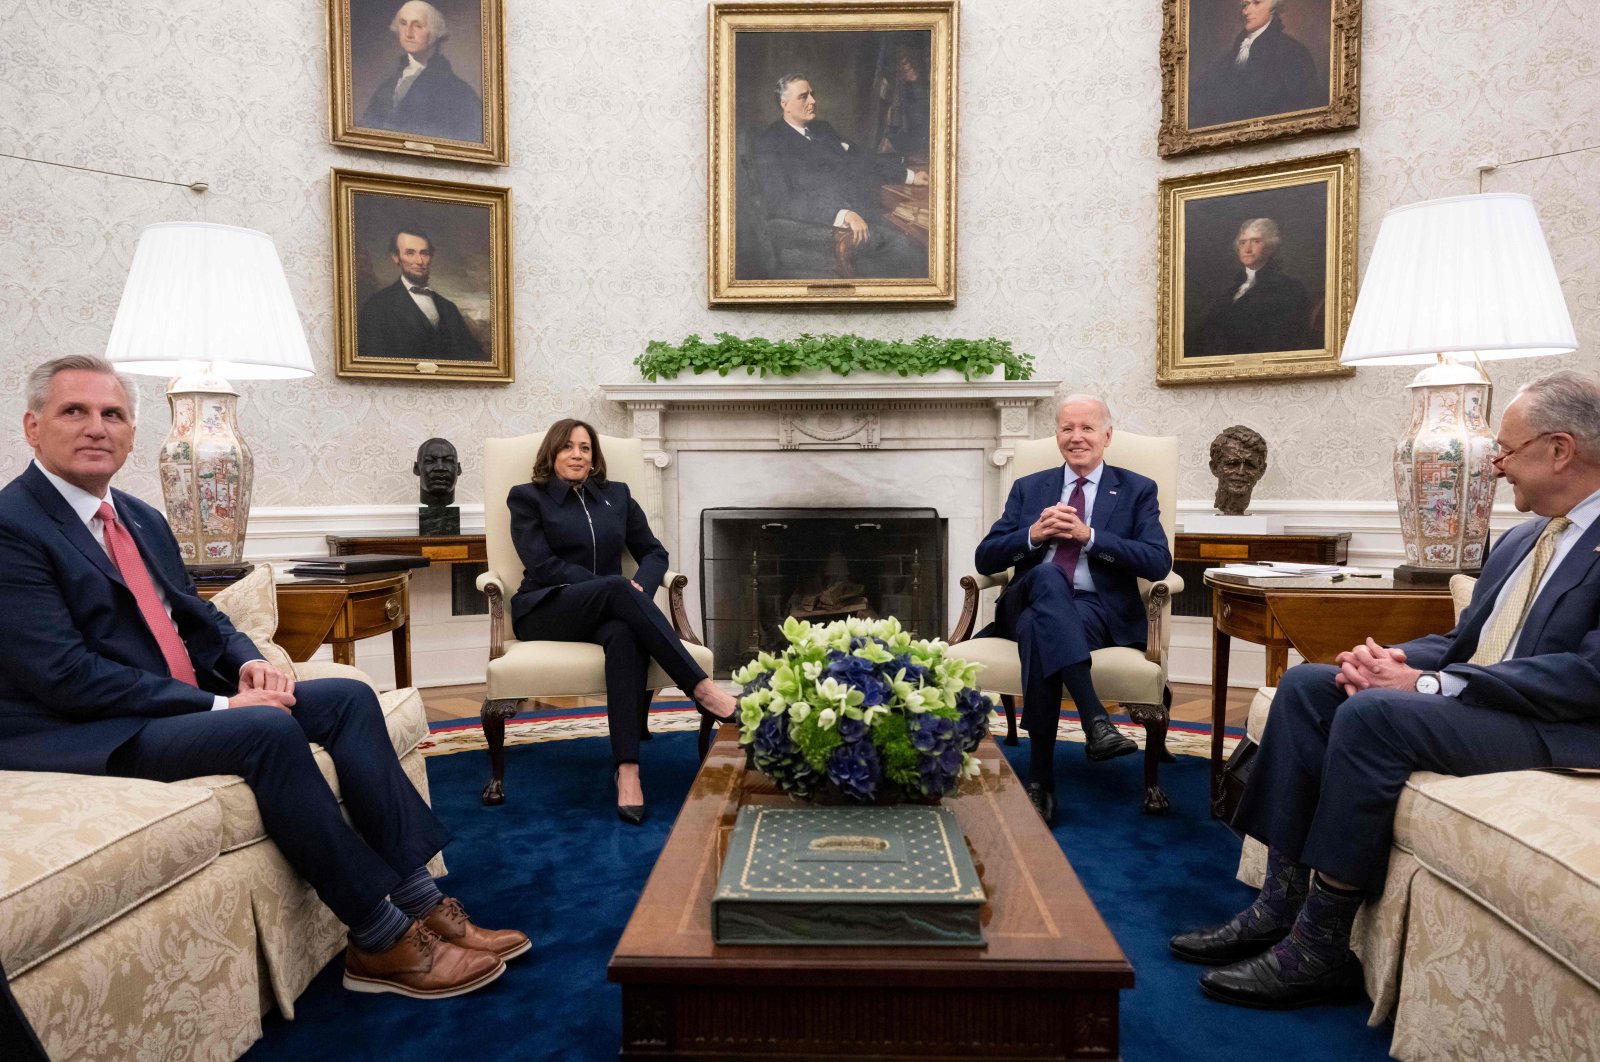 Ketakutan akan bencana default mendorong Biden untuk mempersingkat tur Asia